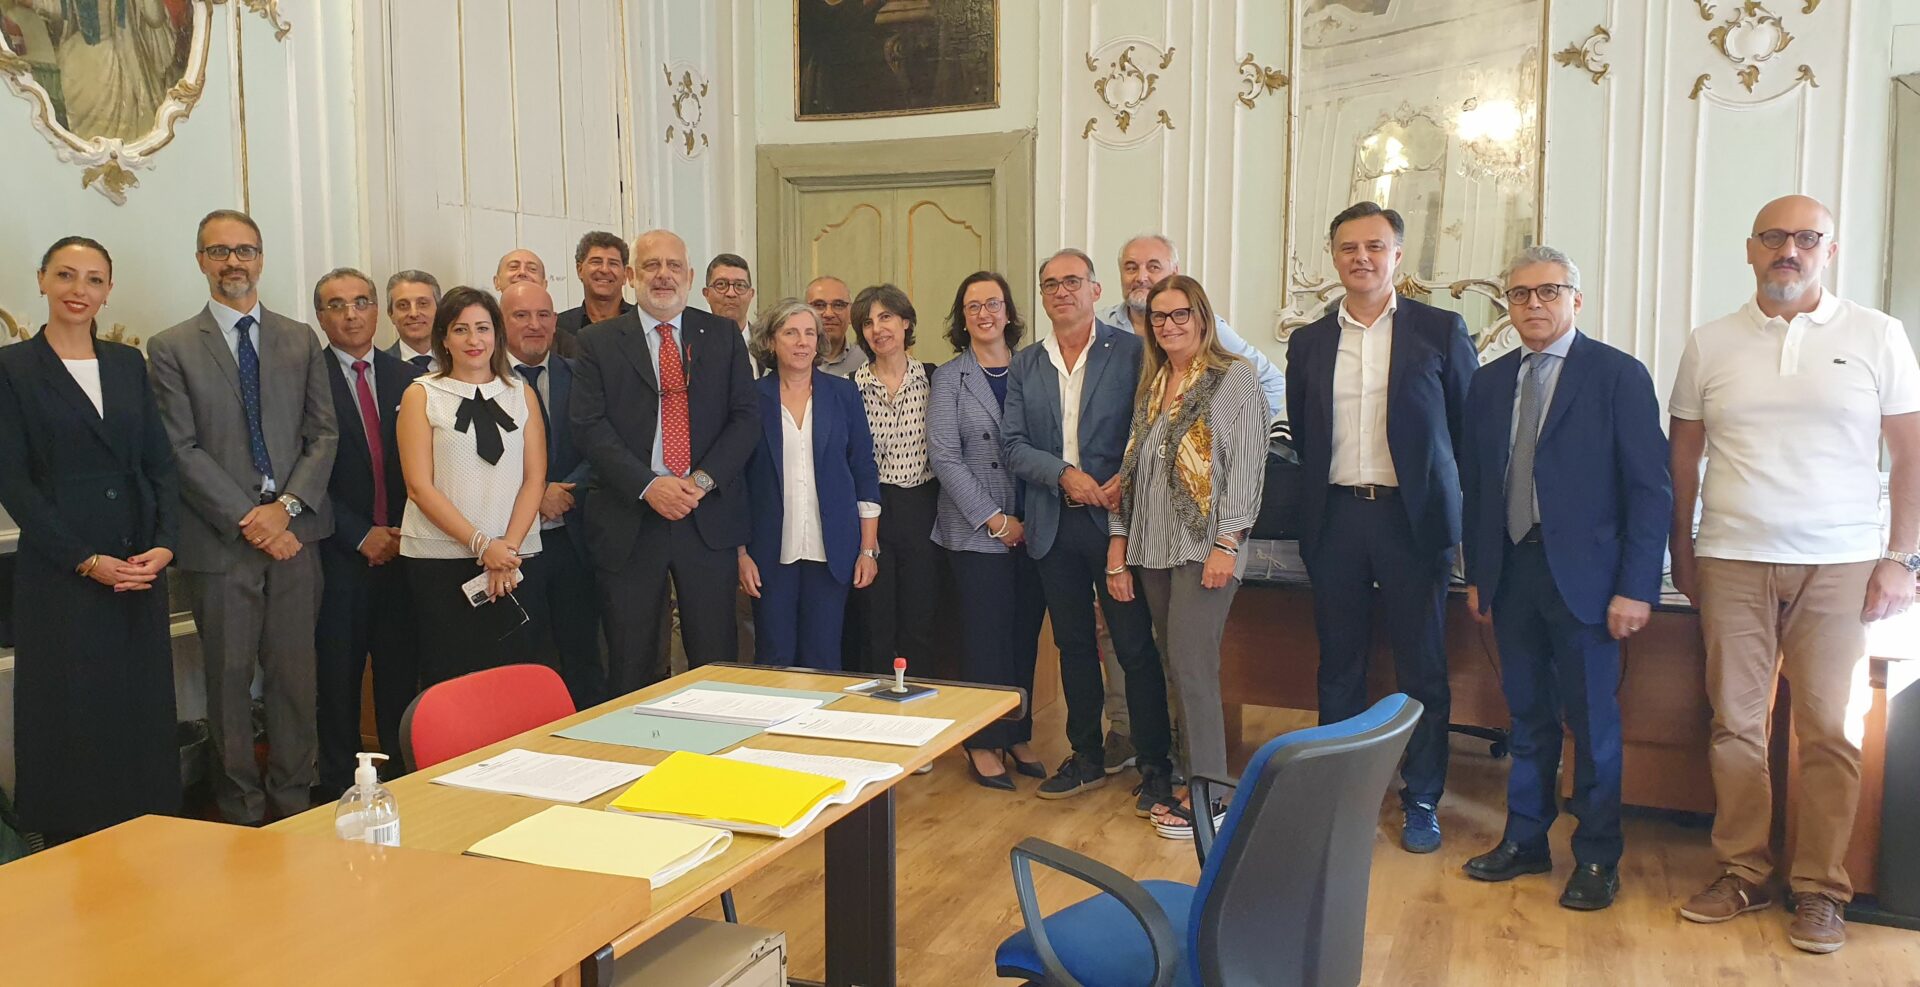 Nuovi dirigenti assunti al Comune di Palermo